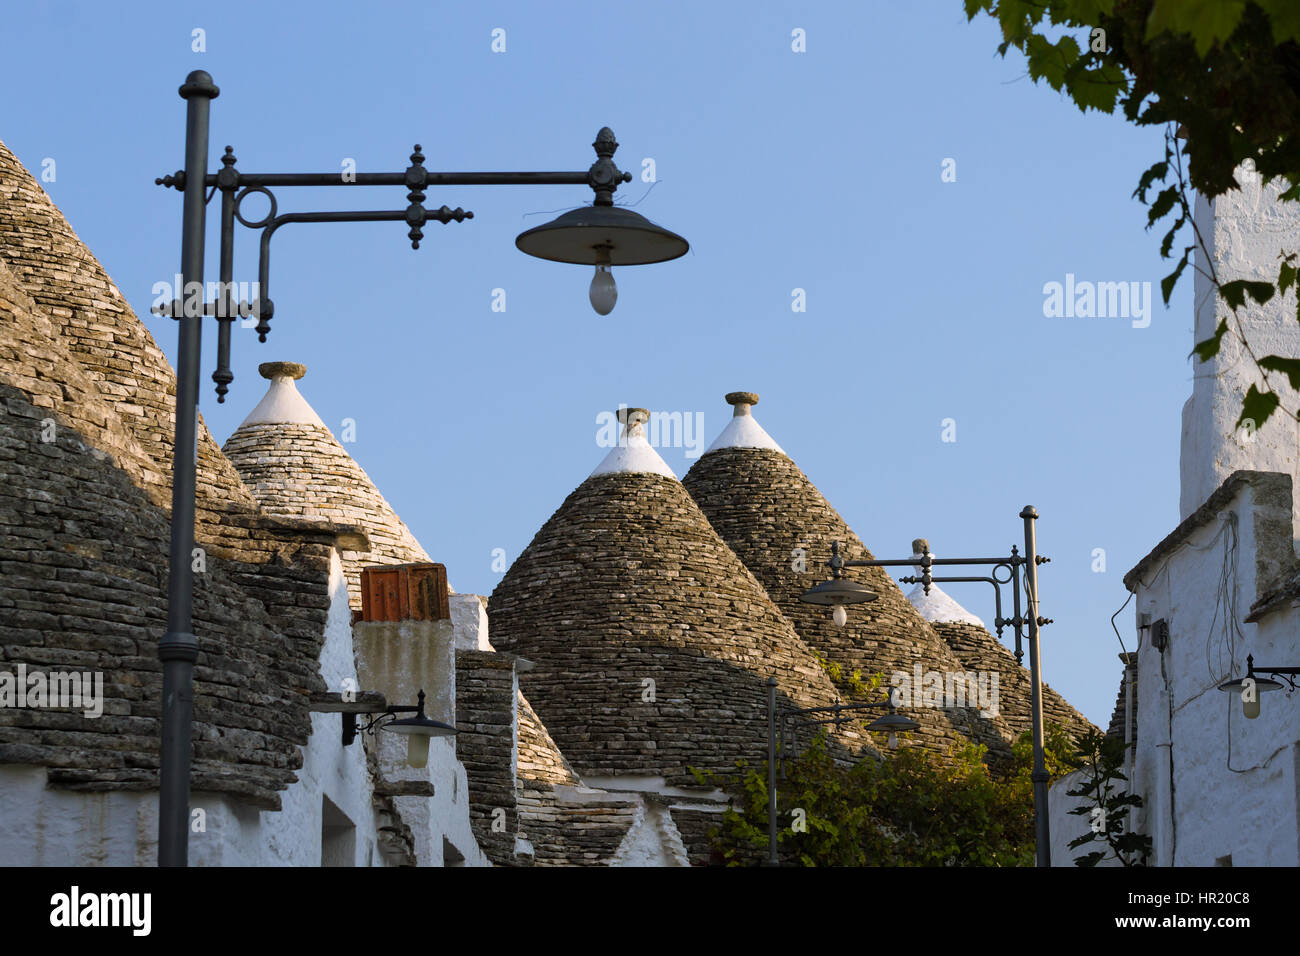 Vista di Alberobello con i trulli di tetti e terrazze, regione Puglia, Italia meridionale. Italiano famoso punto di riferimento. Tipico villaggio Foto Stock